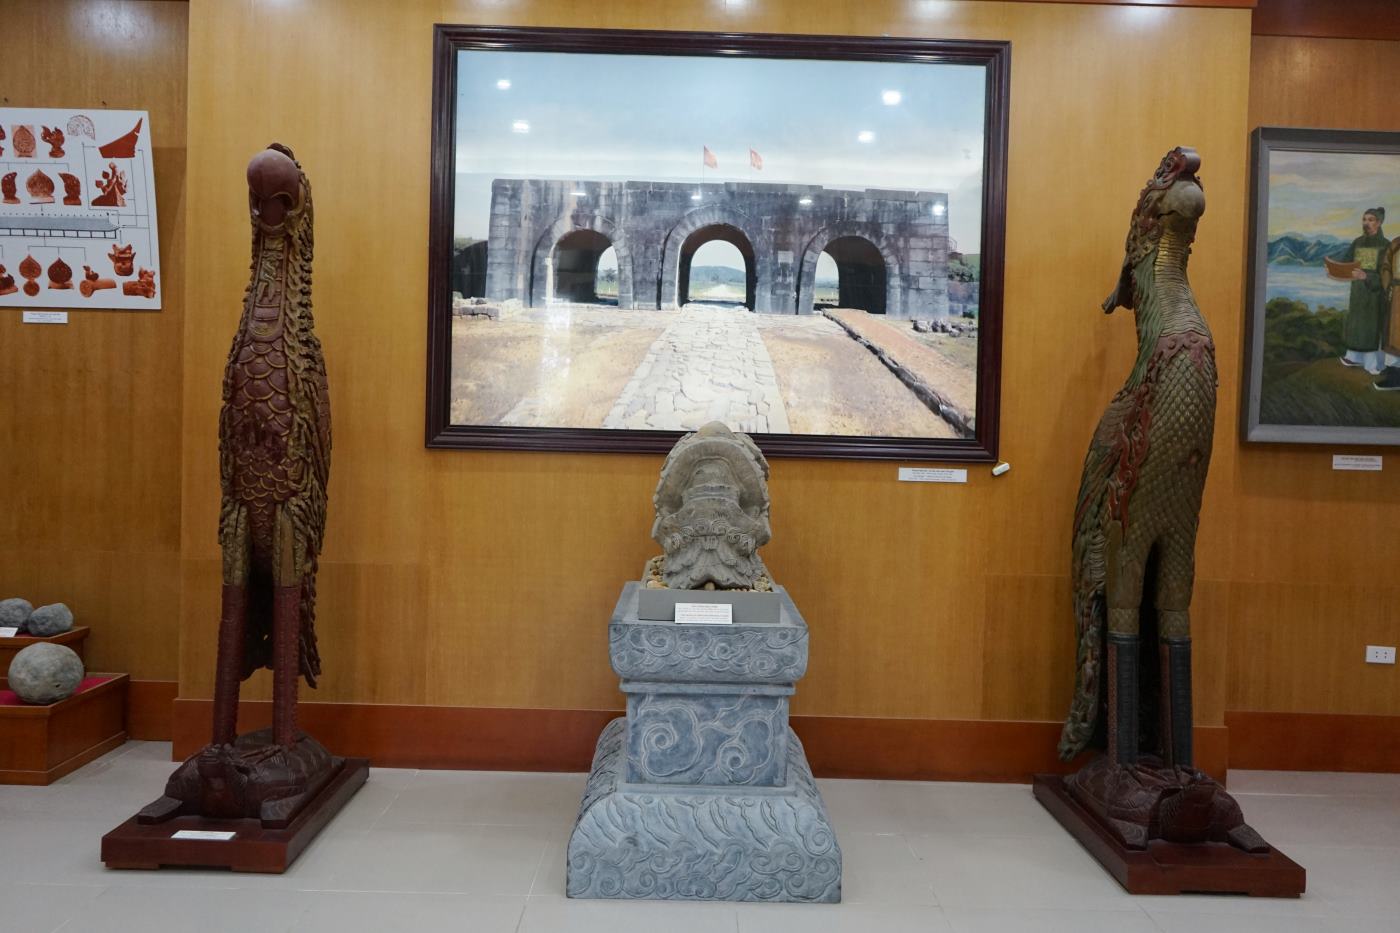 Ngoài các cổ vật chuông đồng trên, hiện nay Bảo tàng Thanh Hóa đang còn lưu giữ hàng chục nghìn hiện vật có giá trị lớn về văn hóa qua các thời kỳ. Ảnh: Quách Du